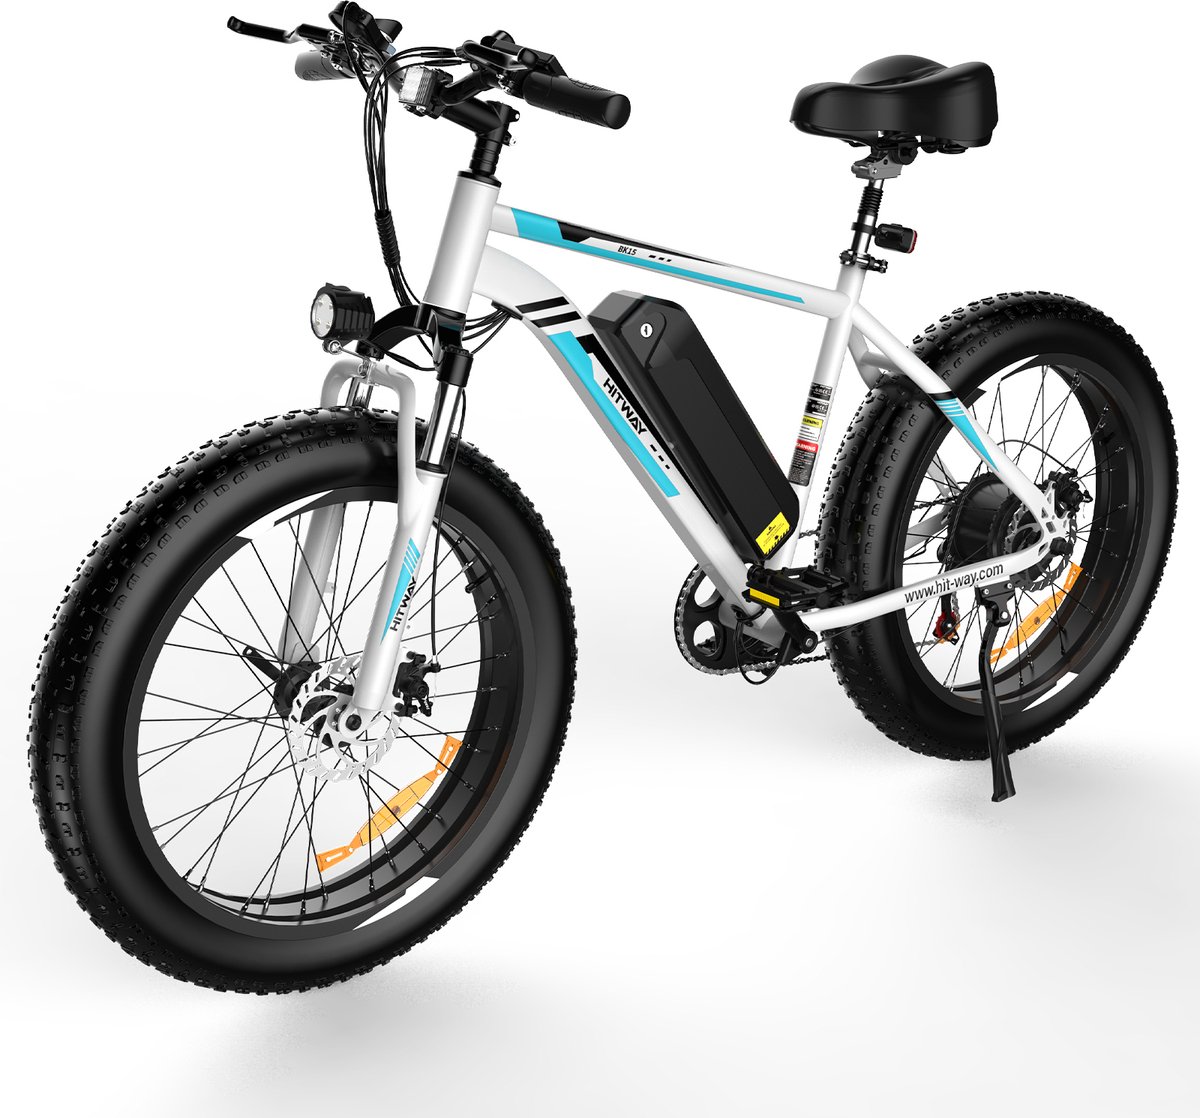 P4B - Elektrische fiets - Hitway - E-bike - Stadsfiets - Elektrische Mountainbike - Fiets - 1 Jaar Garantie - Legaal openbare weg